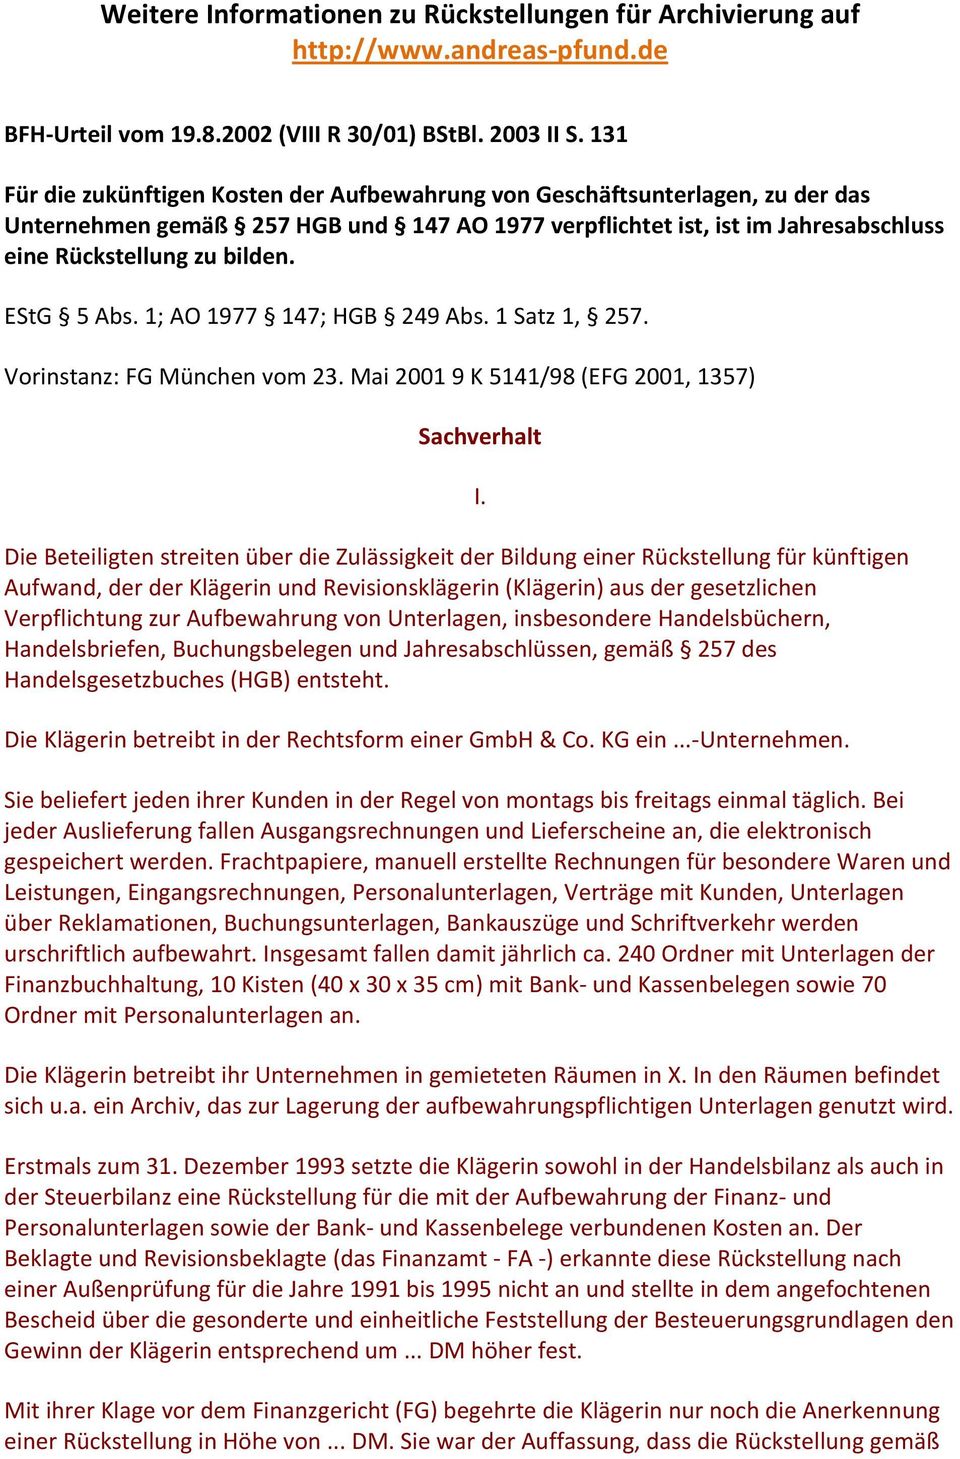 EStG 5 Abs. 1; AO 1977 147; HGB 249 Abs. 1 Satz 1, 257. Vorinstanz: FG München vom 23.